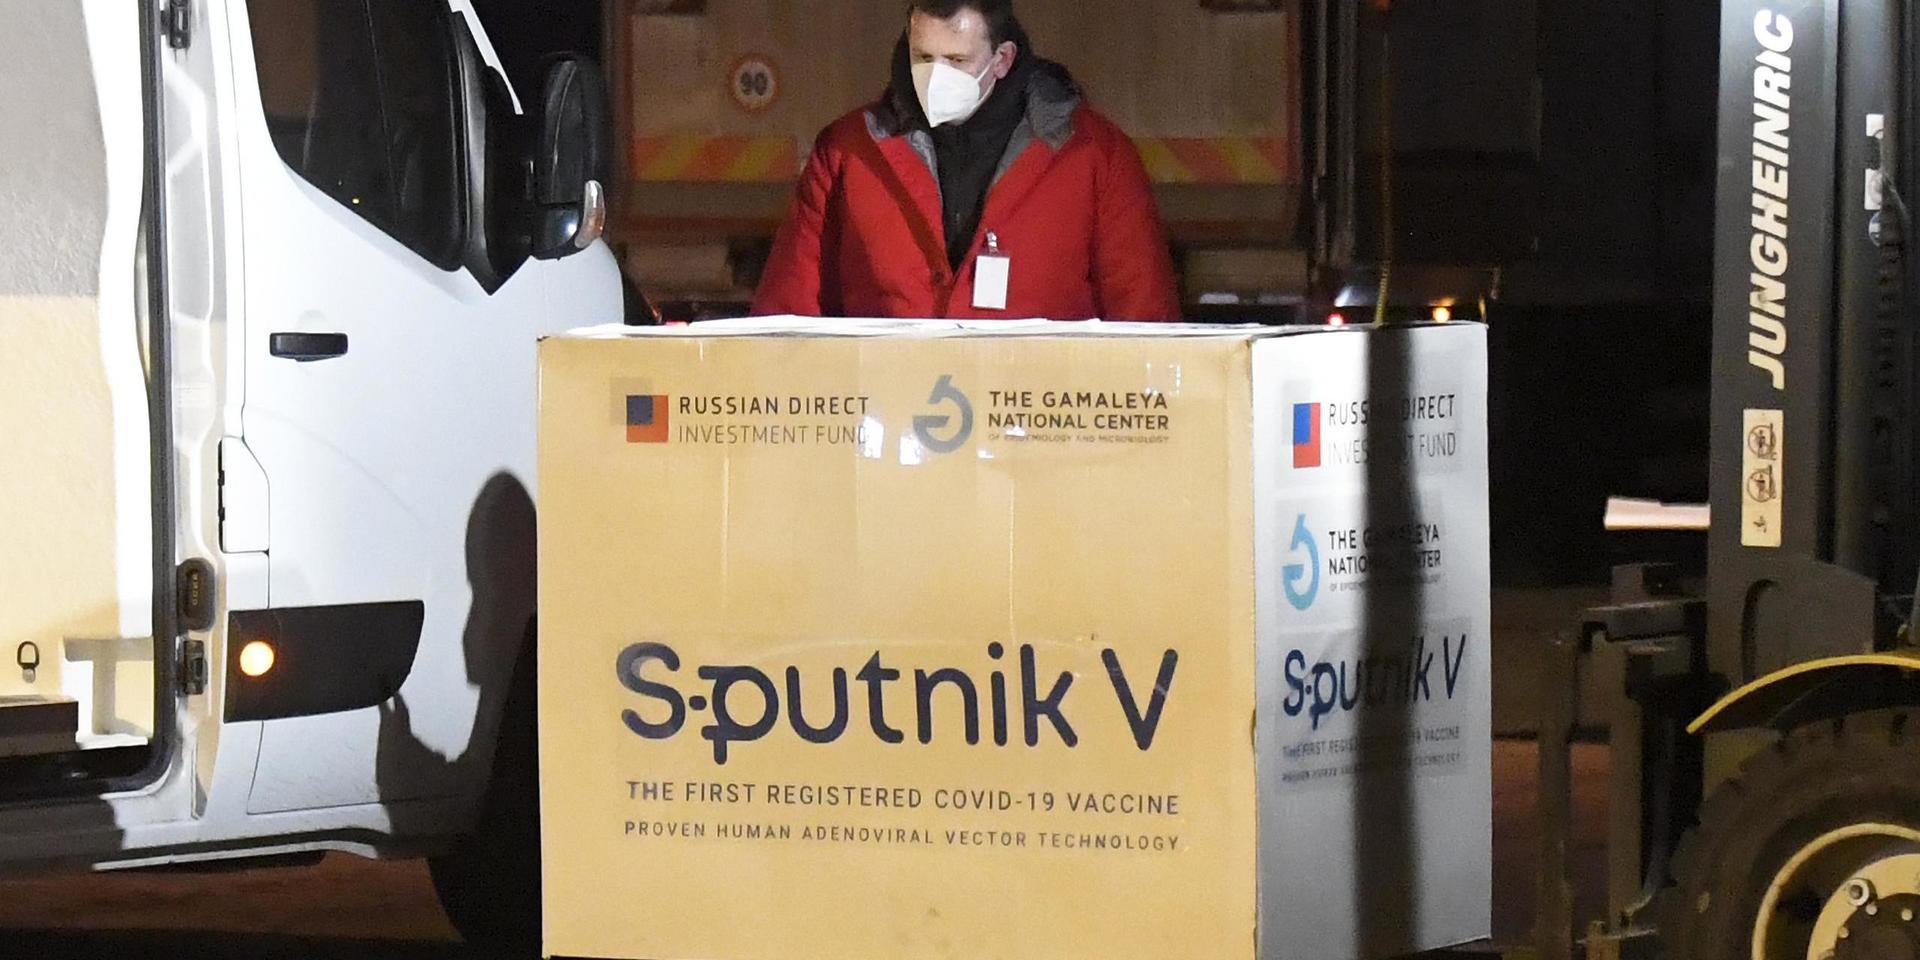 EU:s läkemedelsmyndighet EMA har börjat undersöka om Sputnik V lever upp till unionens säkerhetskrav.